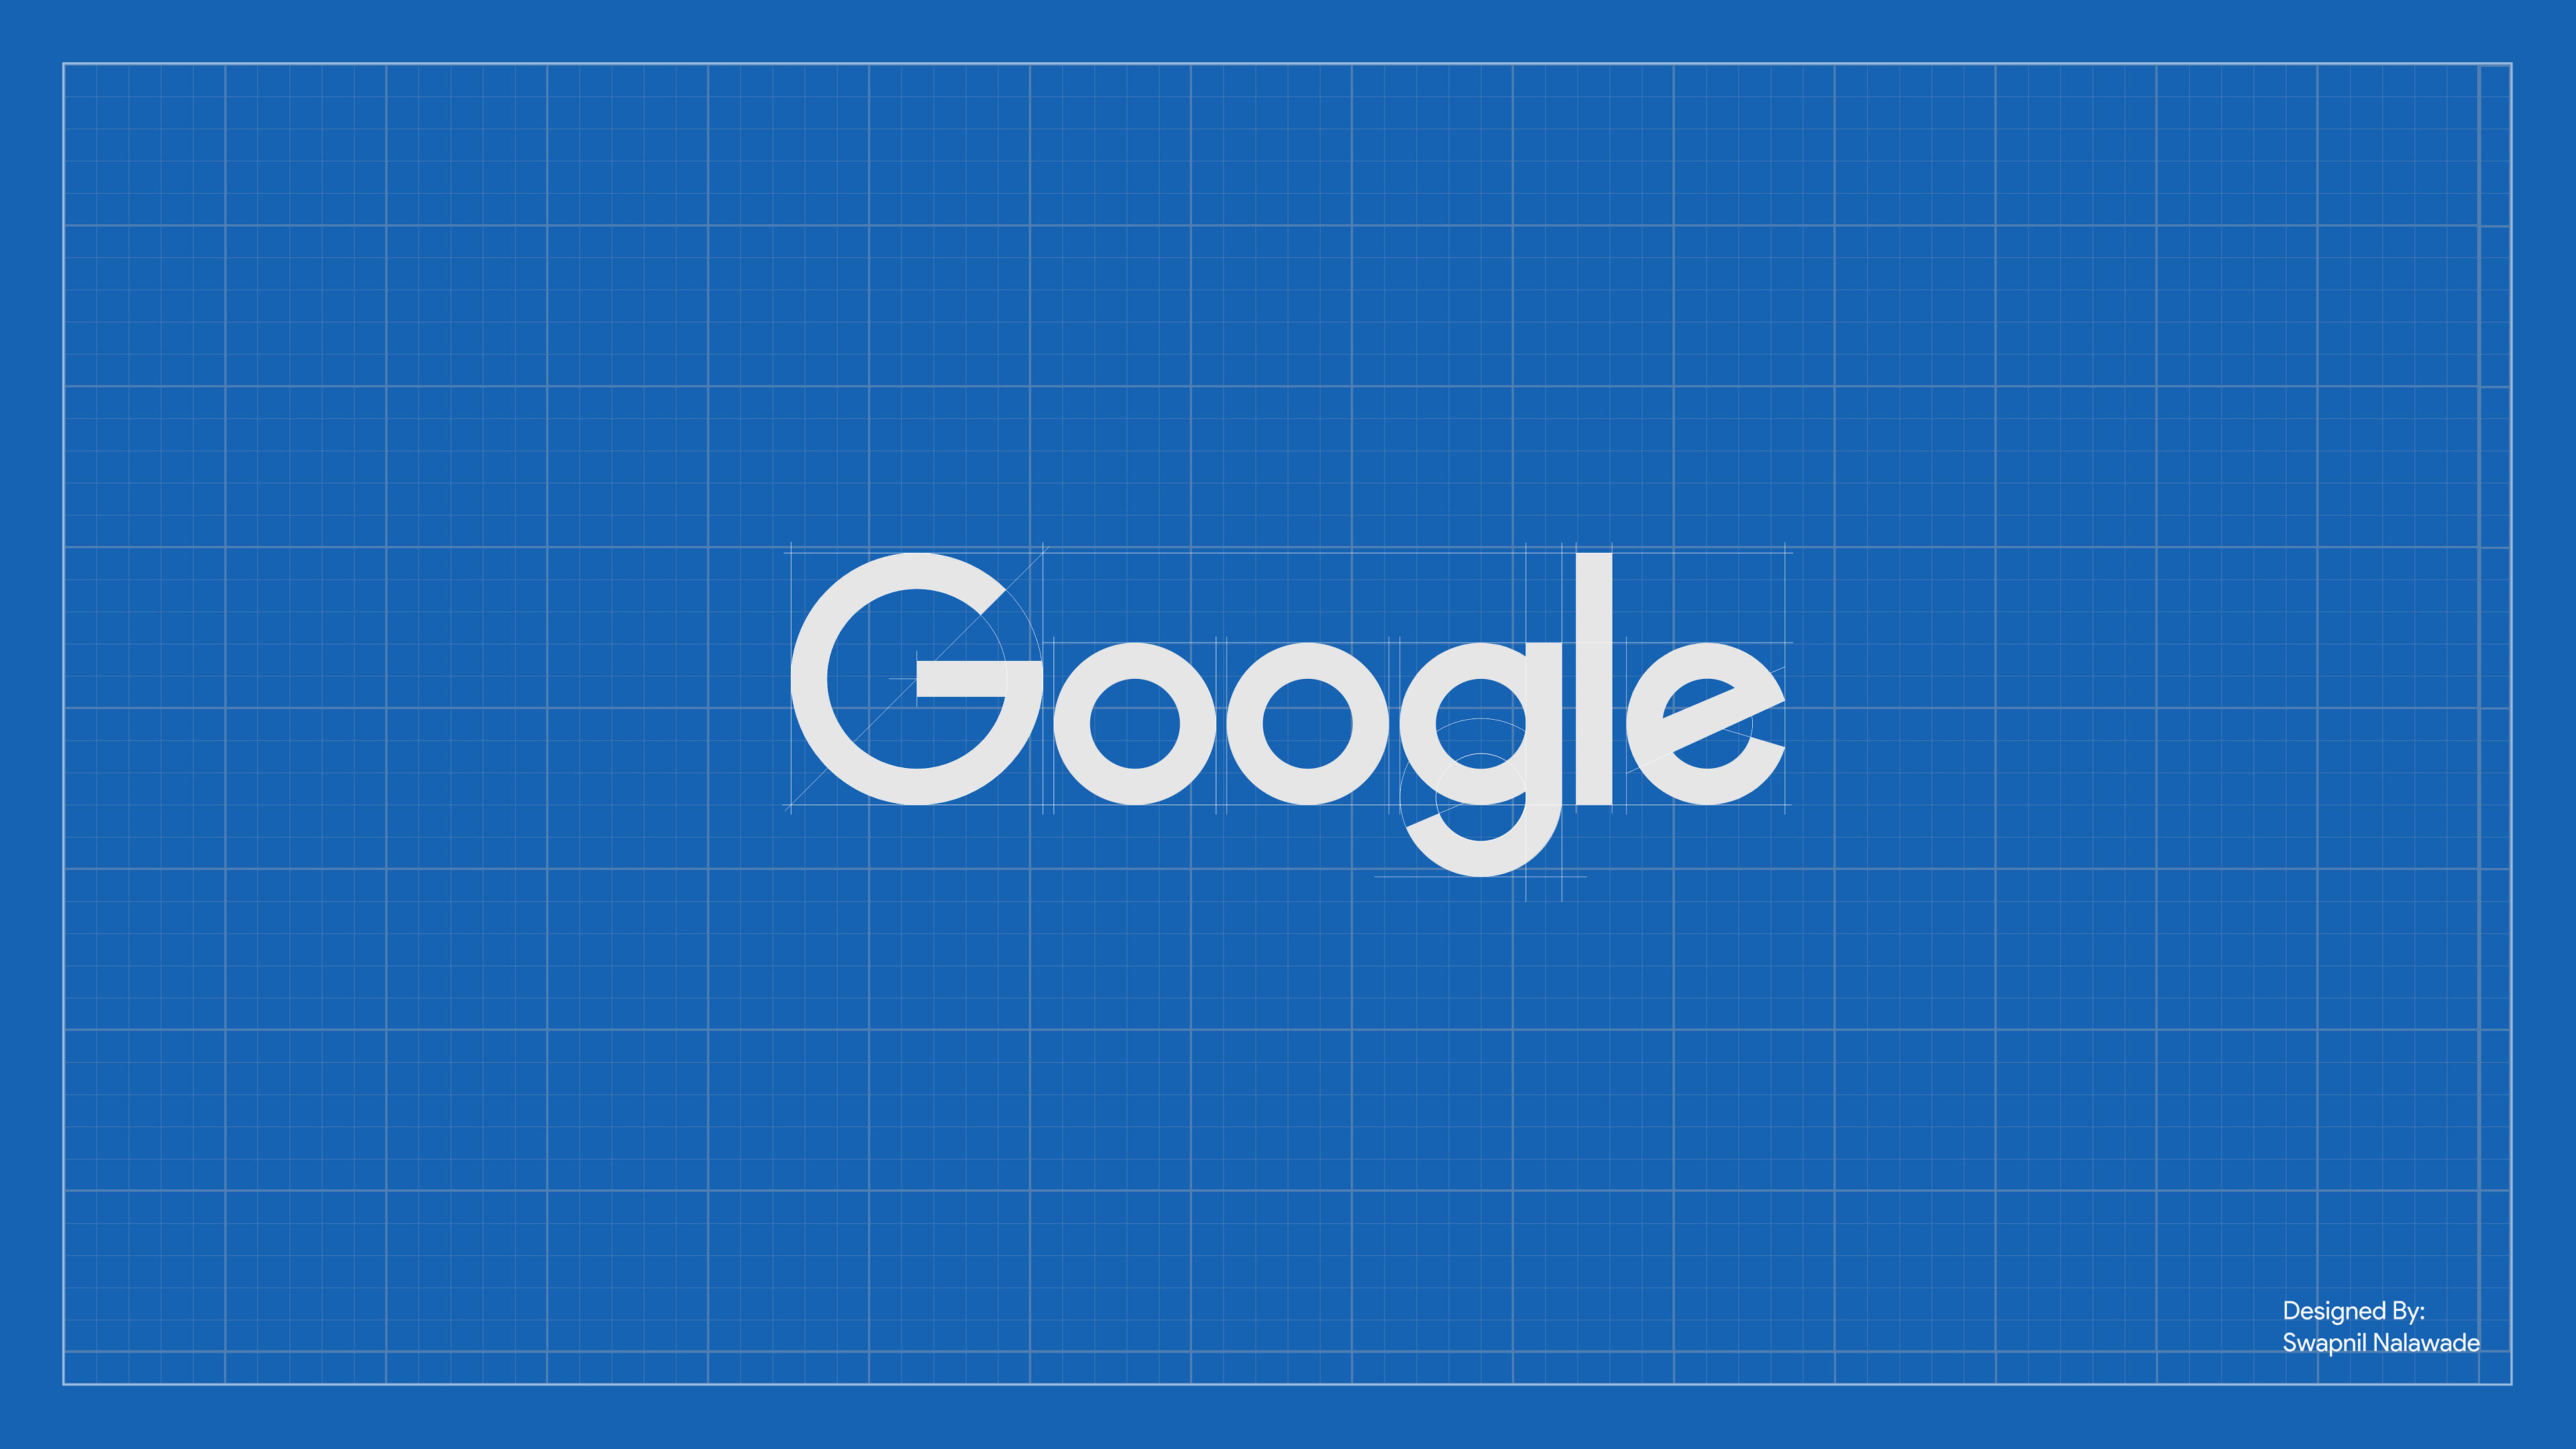 google wallpaper für pc,blau,text,schriftart,elektrisches blau,tagsüber